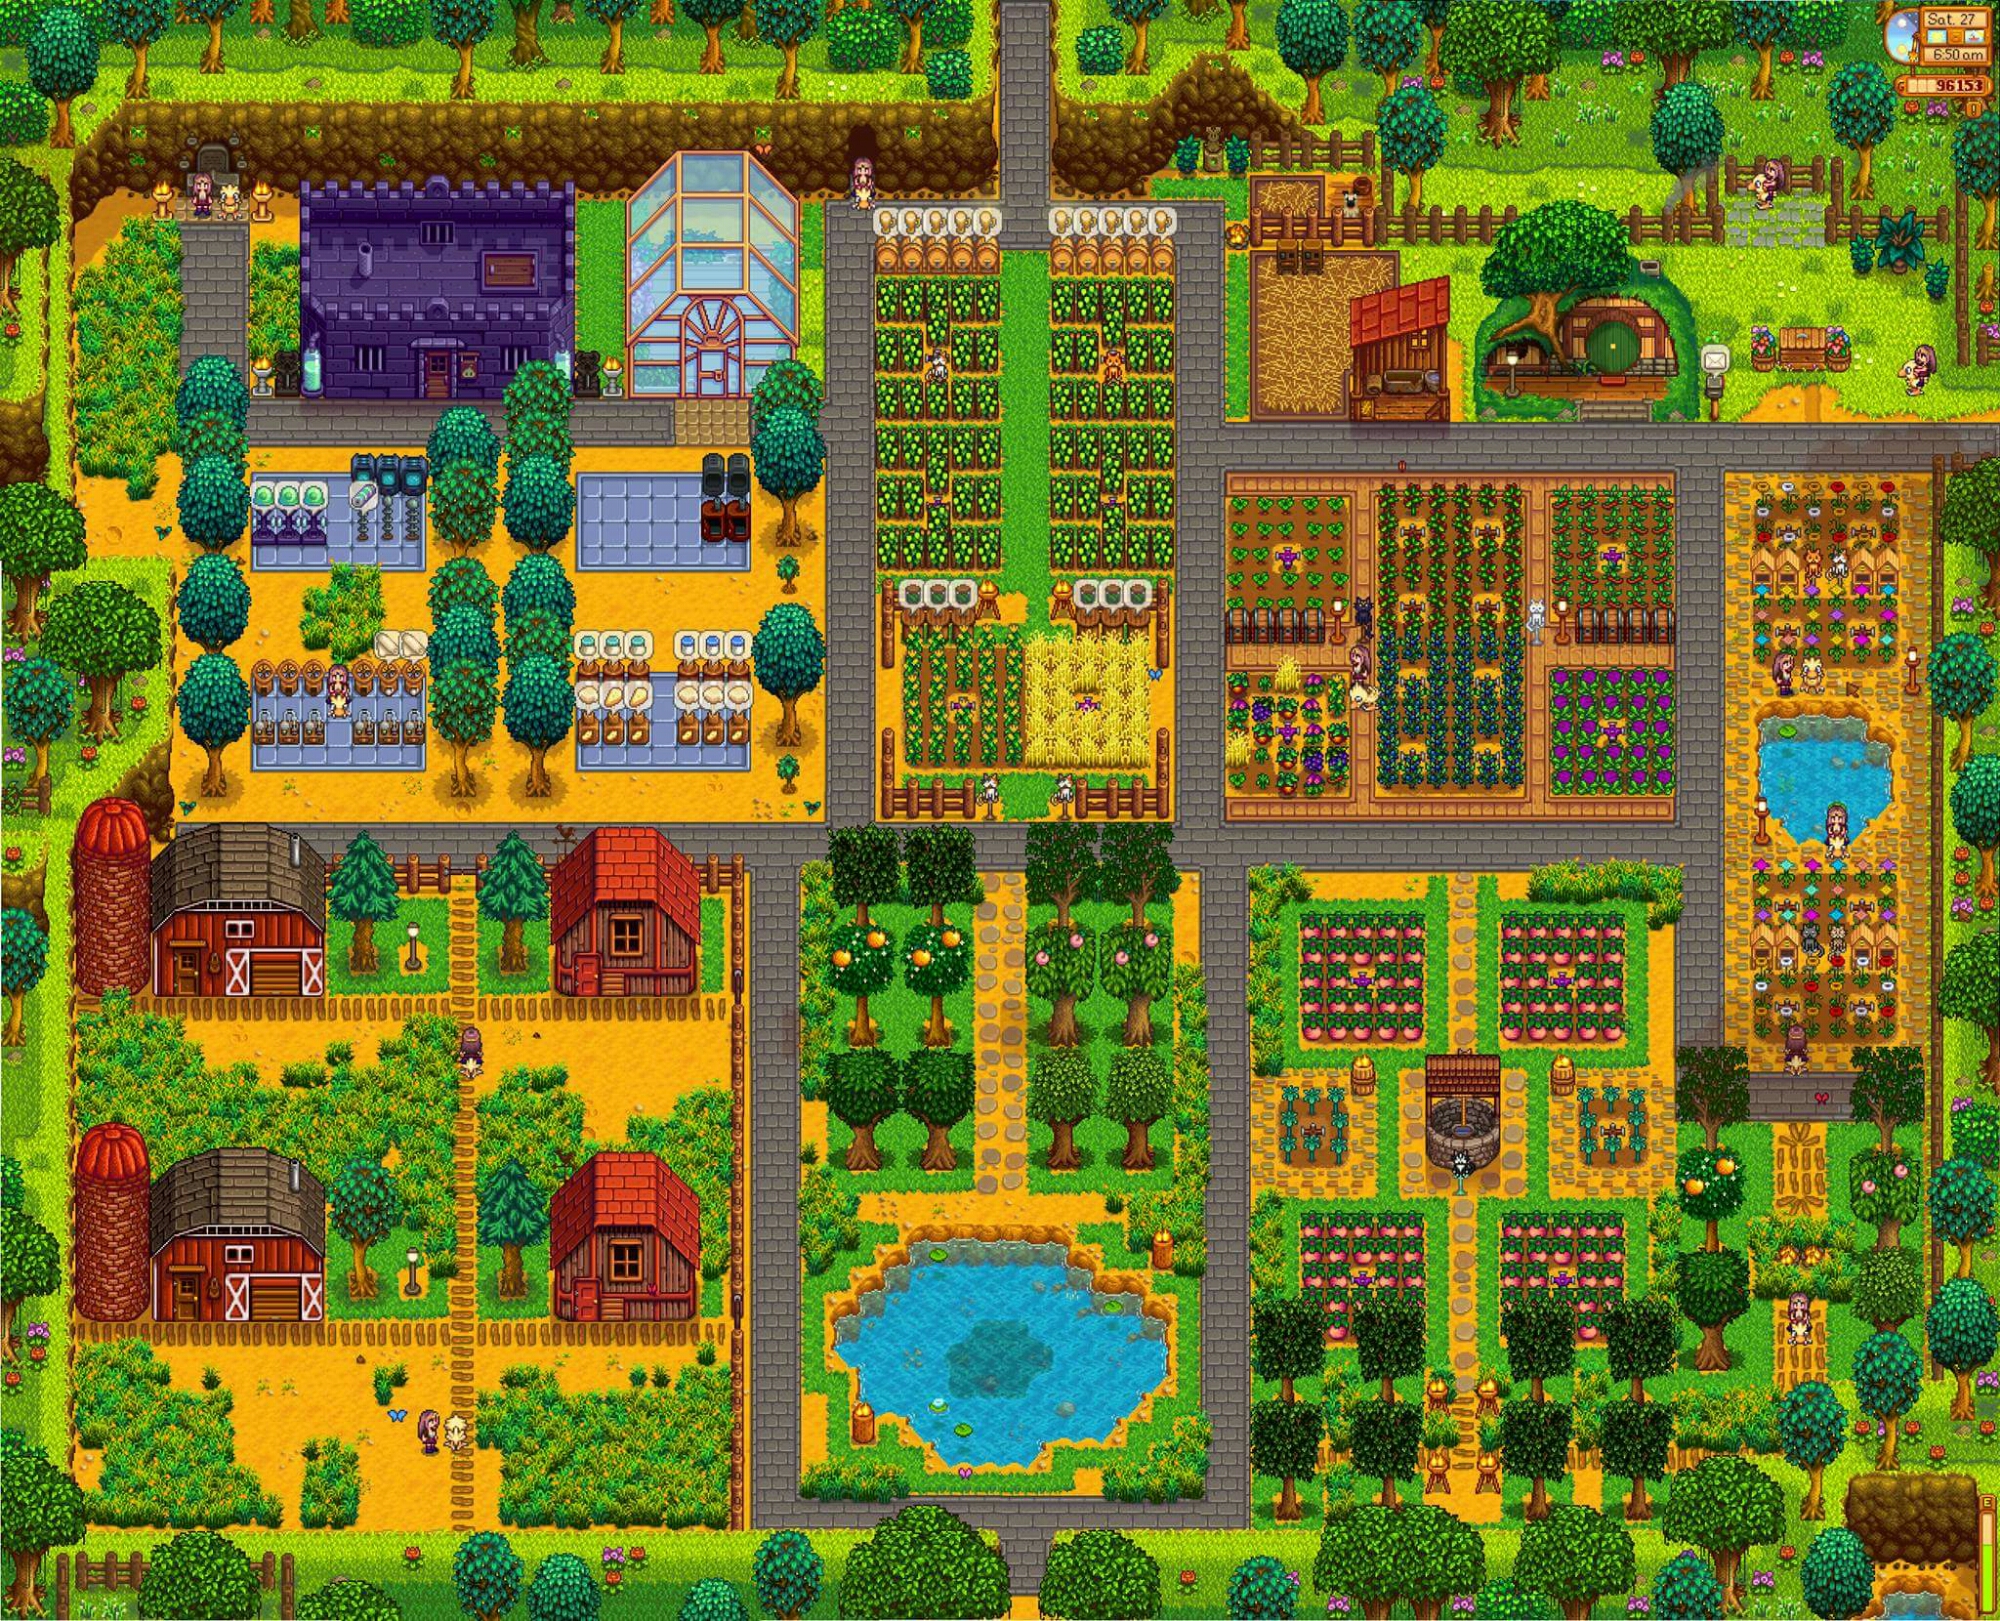 ChsingStrwbry Farm // Stardew Valley [My Farm Layout + Mod 